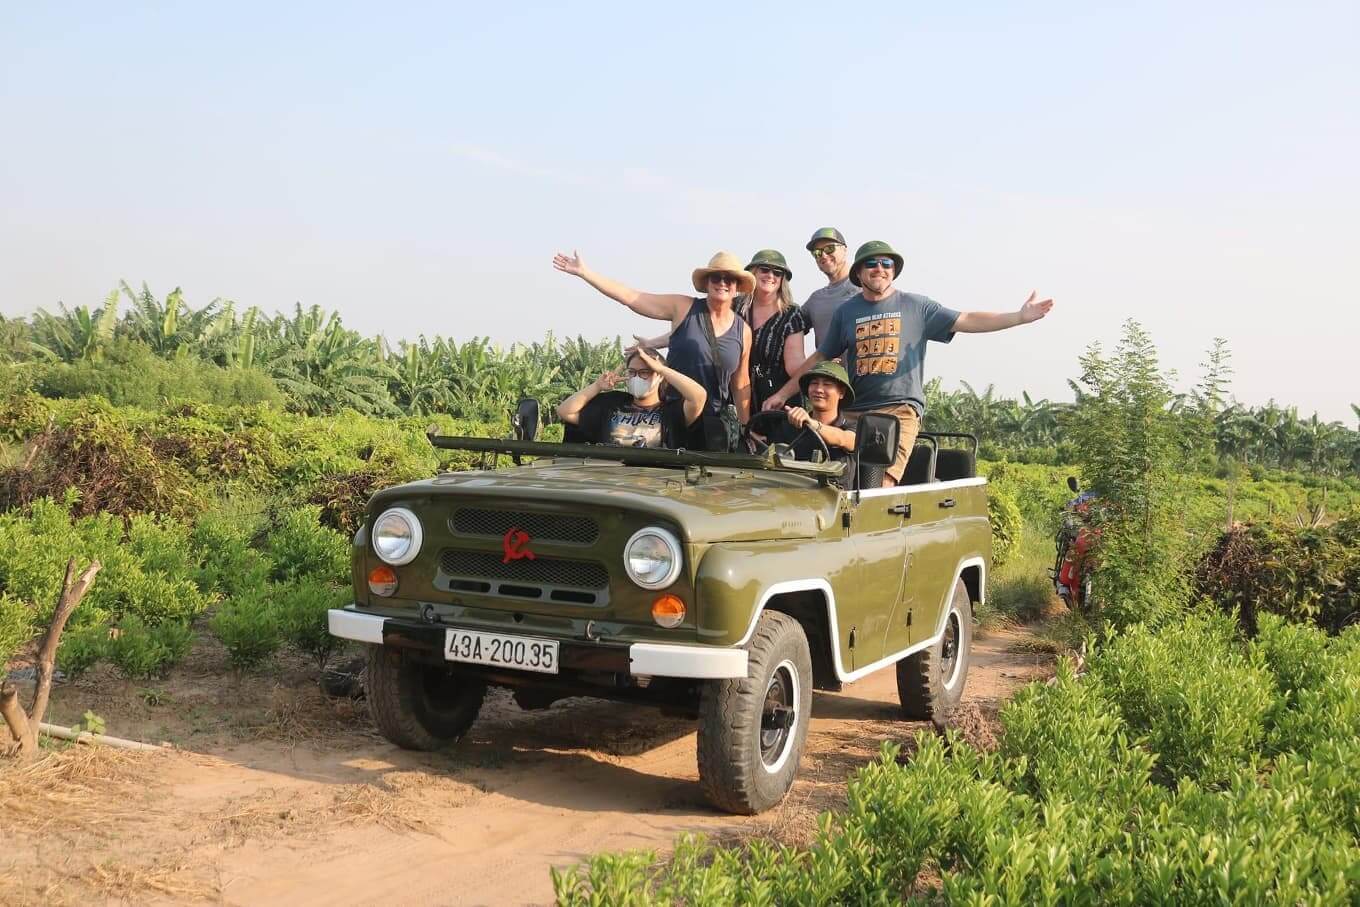 vietnam-laos-cambodia-tour-21-days-hanoi-jeep-tour.jpeg